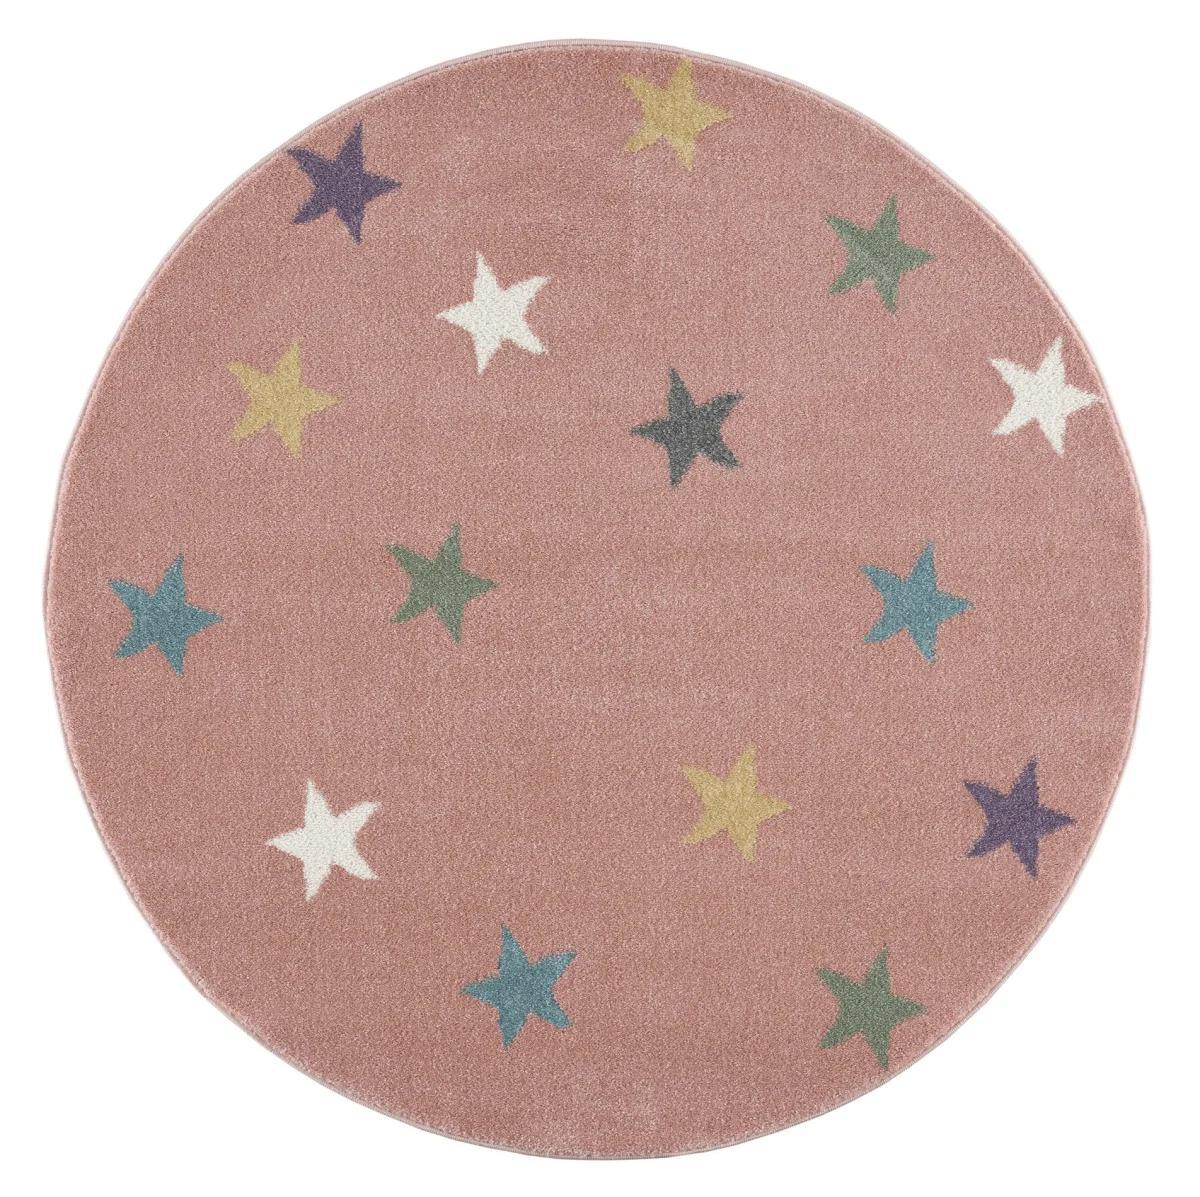 Dywan dziecięcy okrągły Pink Stars Round 133 cm do pokoju dziecięcego różowy w gwiazdki nr. 2